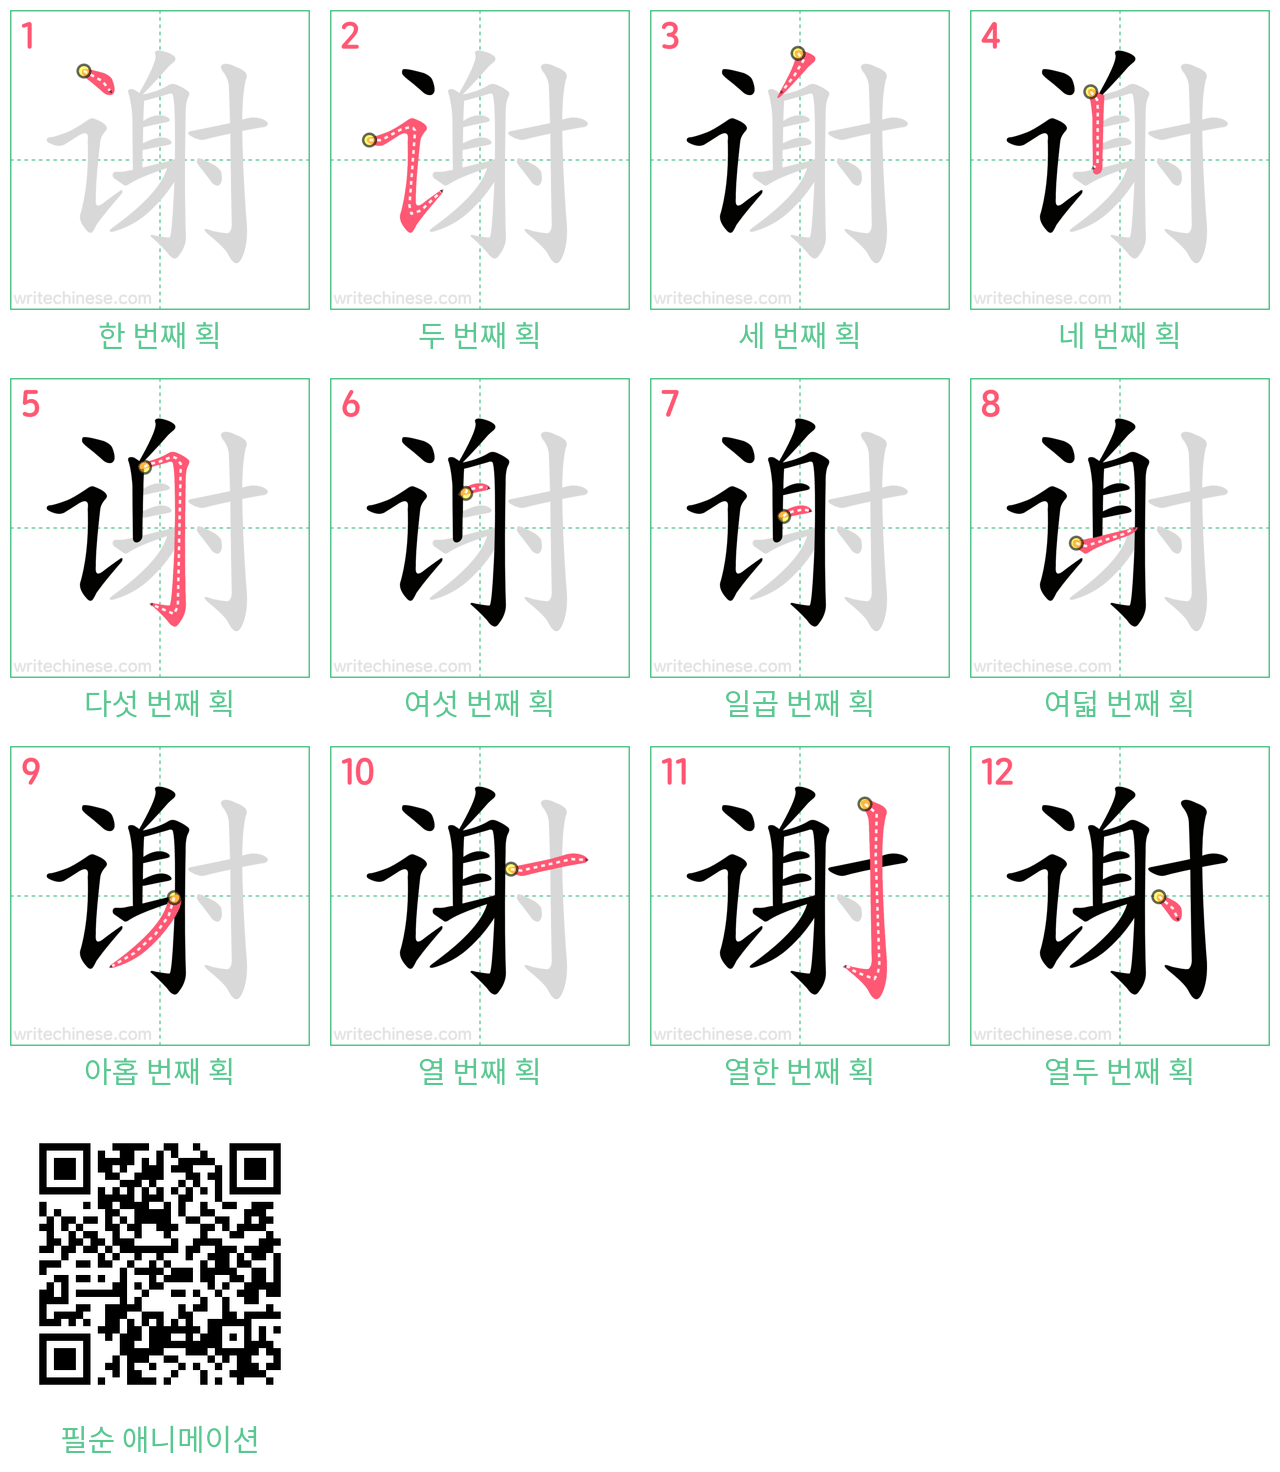 谢 step-by-step stroke order diagrams